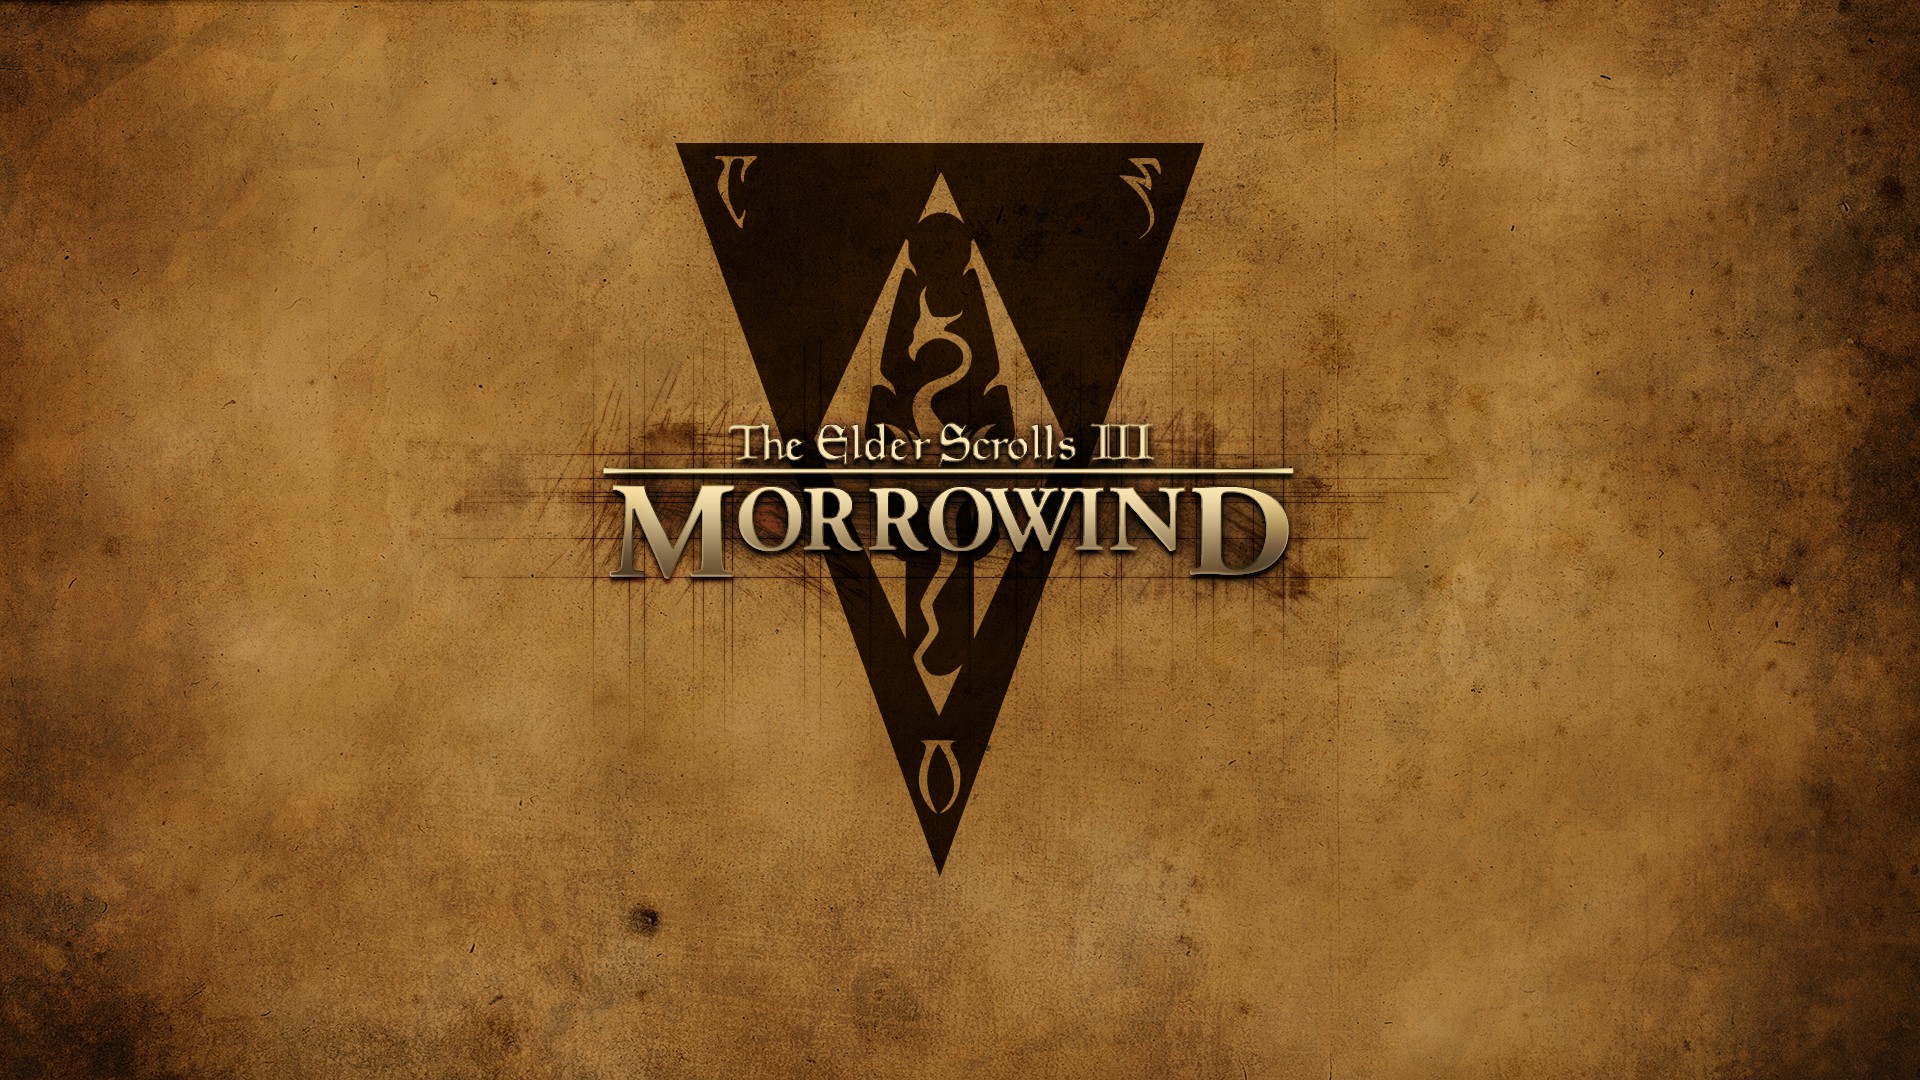 The Elder Scrolls III: Morrowind, The Elder Scrolls Wallpaper